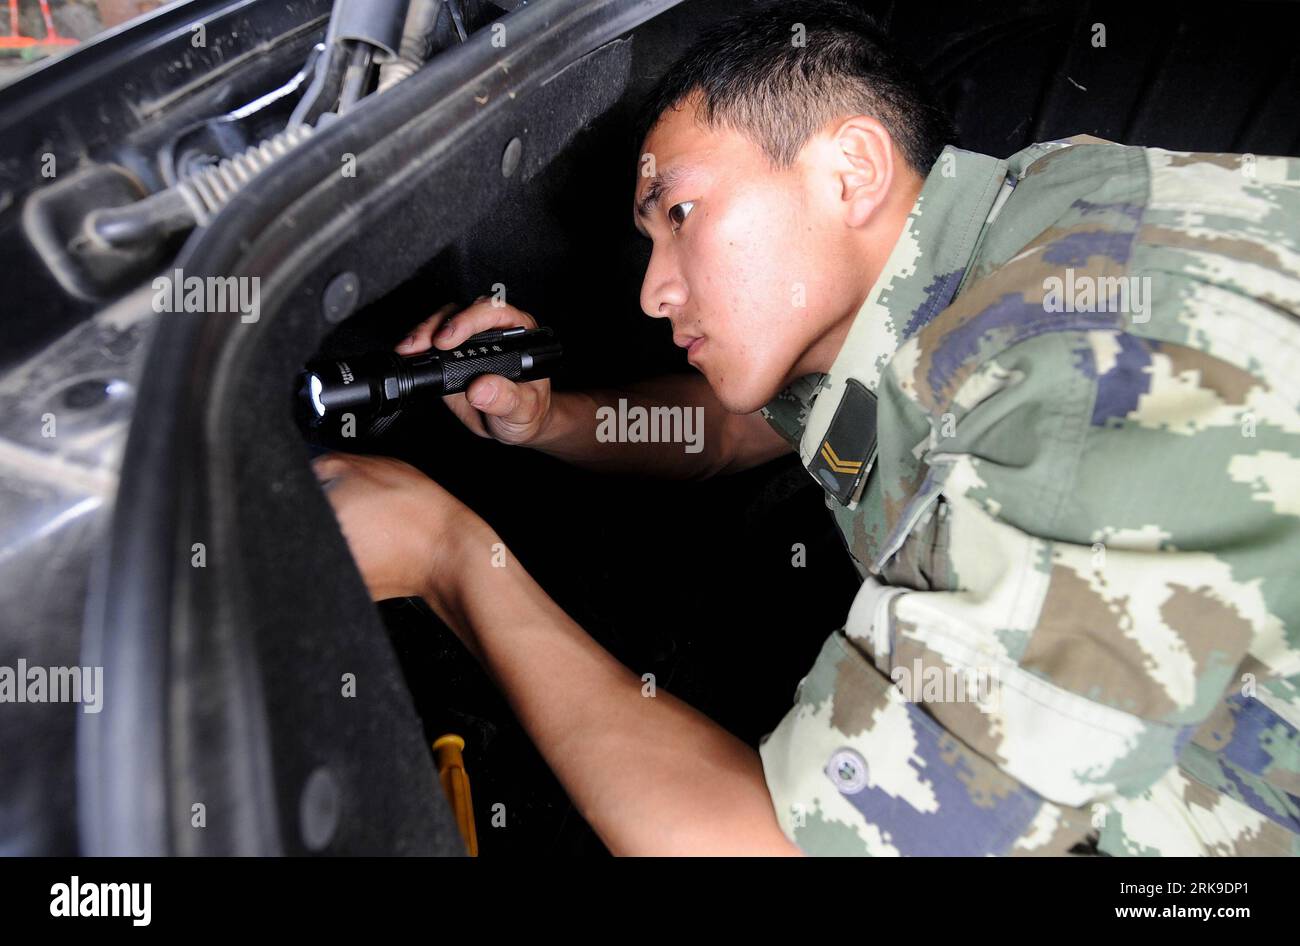 Bildnummer: 54178198 Datum: 24.06.2010 Copyright: imago/Xinhua (100626) -- DEHONG(YUNNAN), 26 giugno 2010 (Xinhua) -- Un soldato di un posto di blocco ispeziona un veicolo per droghe illegali nascoste durante un'operazione antidroga nella prefettura autonoma di Dehong, nel sud-ovest della Cina, provincia dello Yunnan, 24 giugno 2010. Il checkpoint di Dehong è stato fondato nel 1978 e si trova vicino al Myanmar e all'area del Triangolo d'Oro, la famosa base di produzione di droga. Più di 2000 veicoli vengono ispezionati ogni giorno e vari farmaci di oltre 1 tonnellata vengono confiscati ogni anno al checkpoint. (Xinhua/Lin Yigua Foto Stock